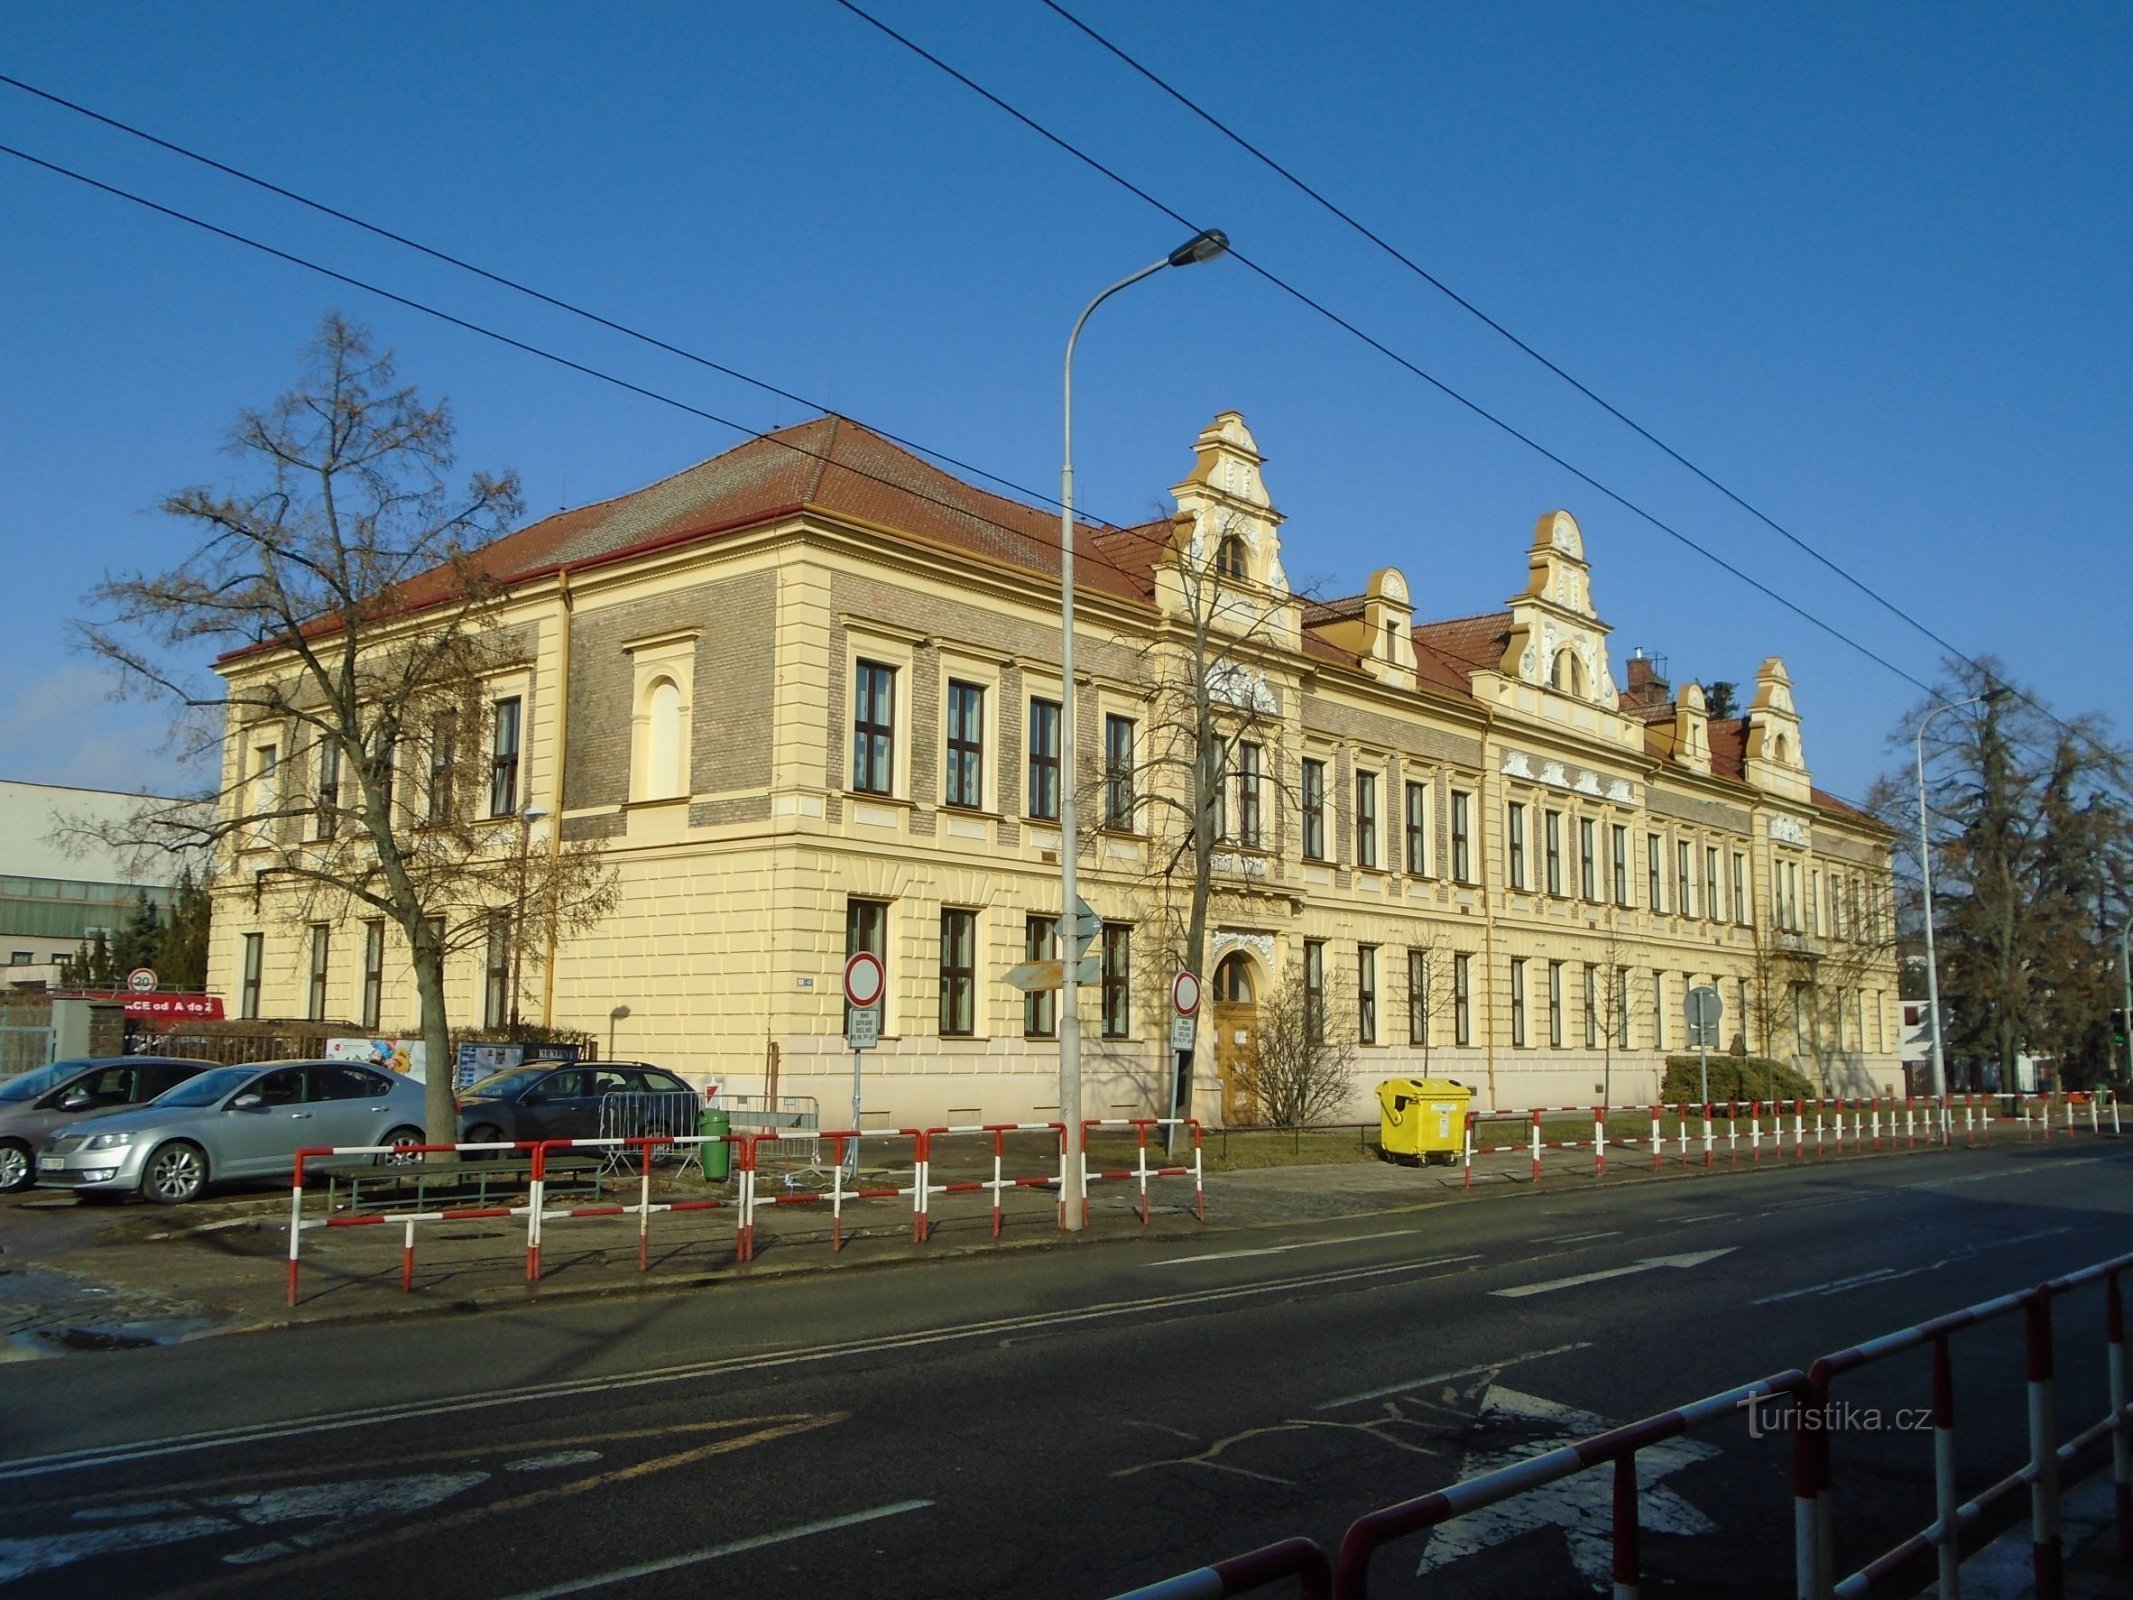 Huidig ​​uiterlijk van de algemene school in Kukleny (Hradec Králové, 8.2.2019 februari XNUMX)